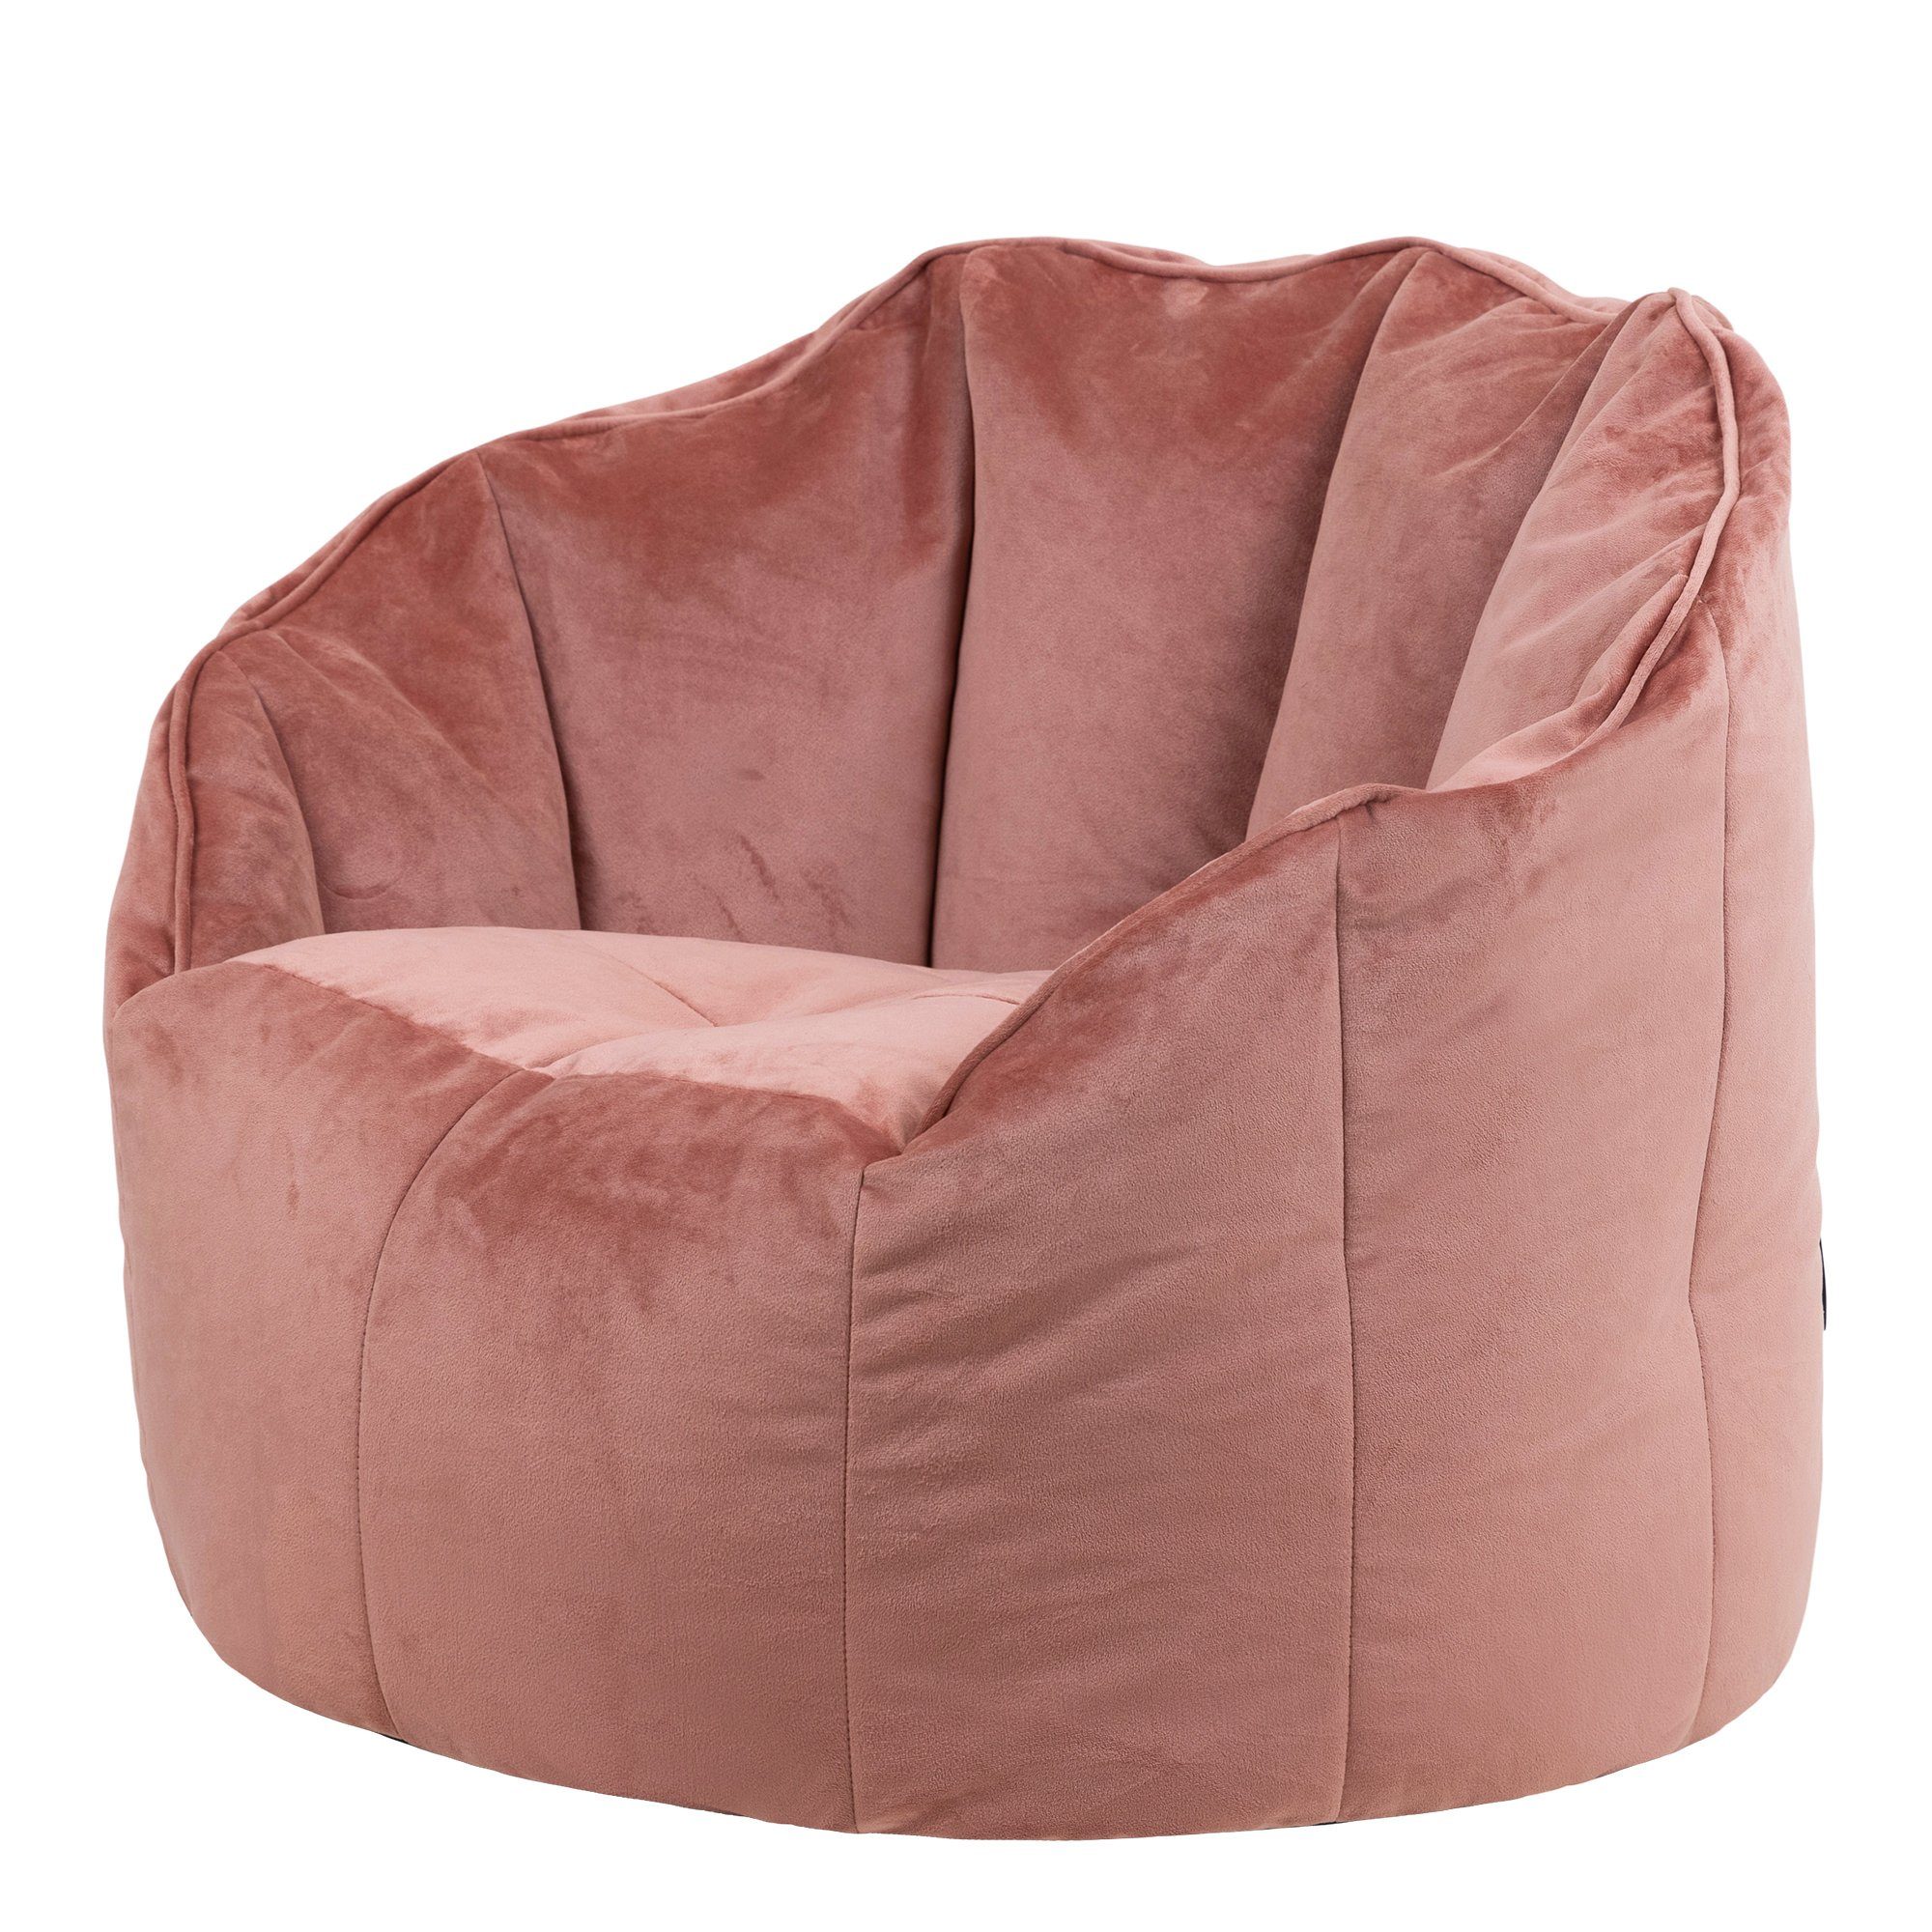 Plüschsamt Sitzsack aus Sitzsack Sessel „Sirena“ icon rosa